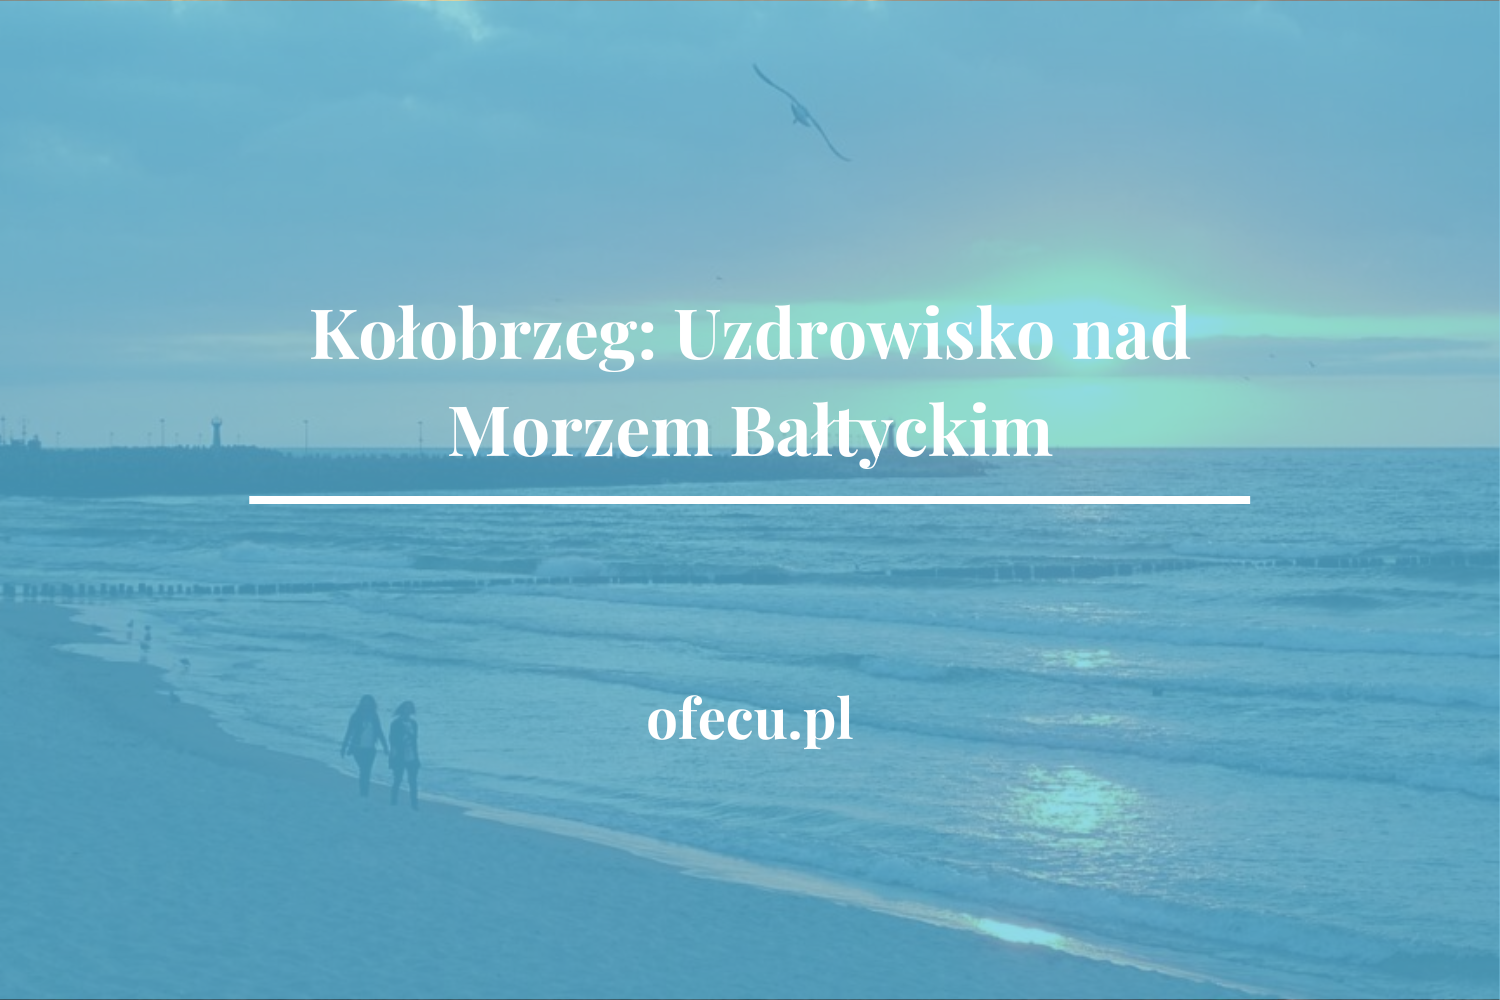 Kołobrzeg: Uzdrowisko nad Morzem Bałtyckim